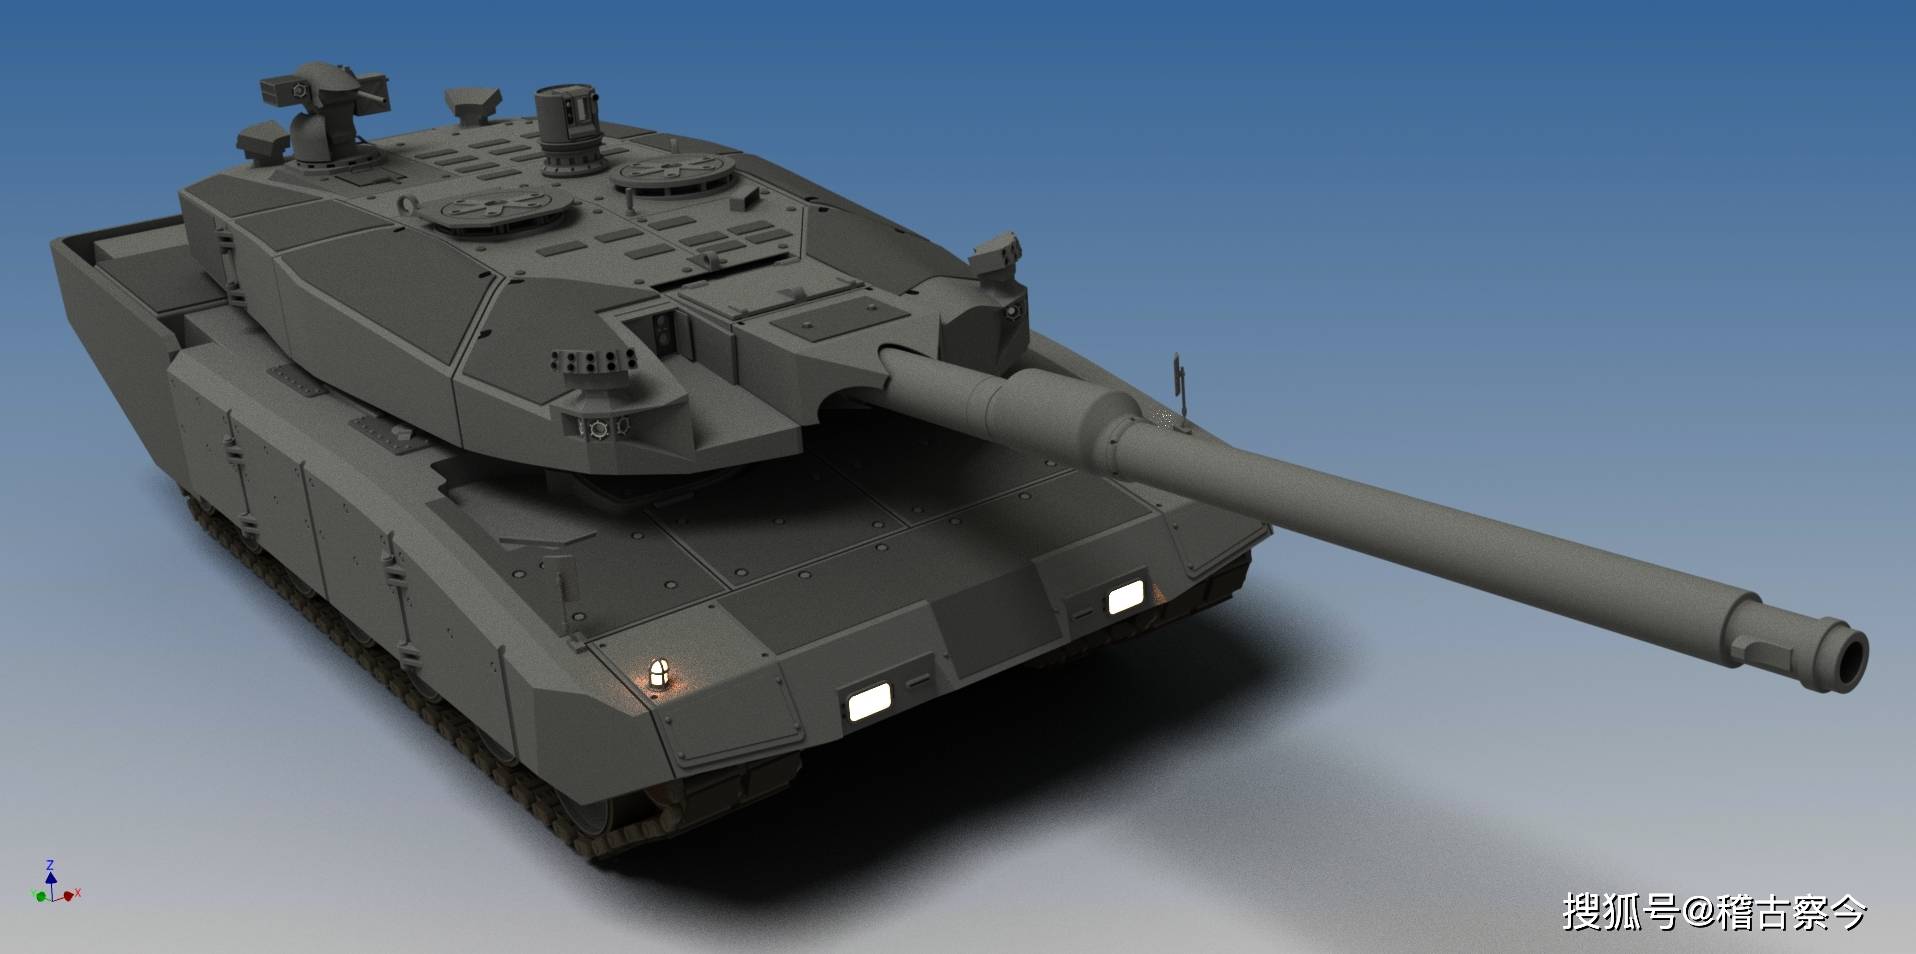 莱茵金属mbt130毫米坦克炮争锋俄罗斯阿玛塔之战坦克世界最强坦克炮